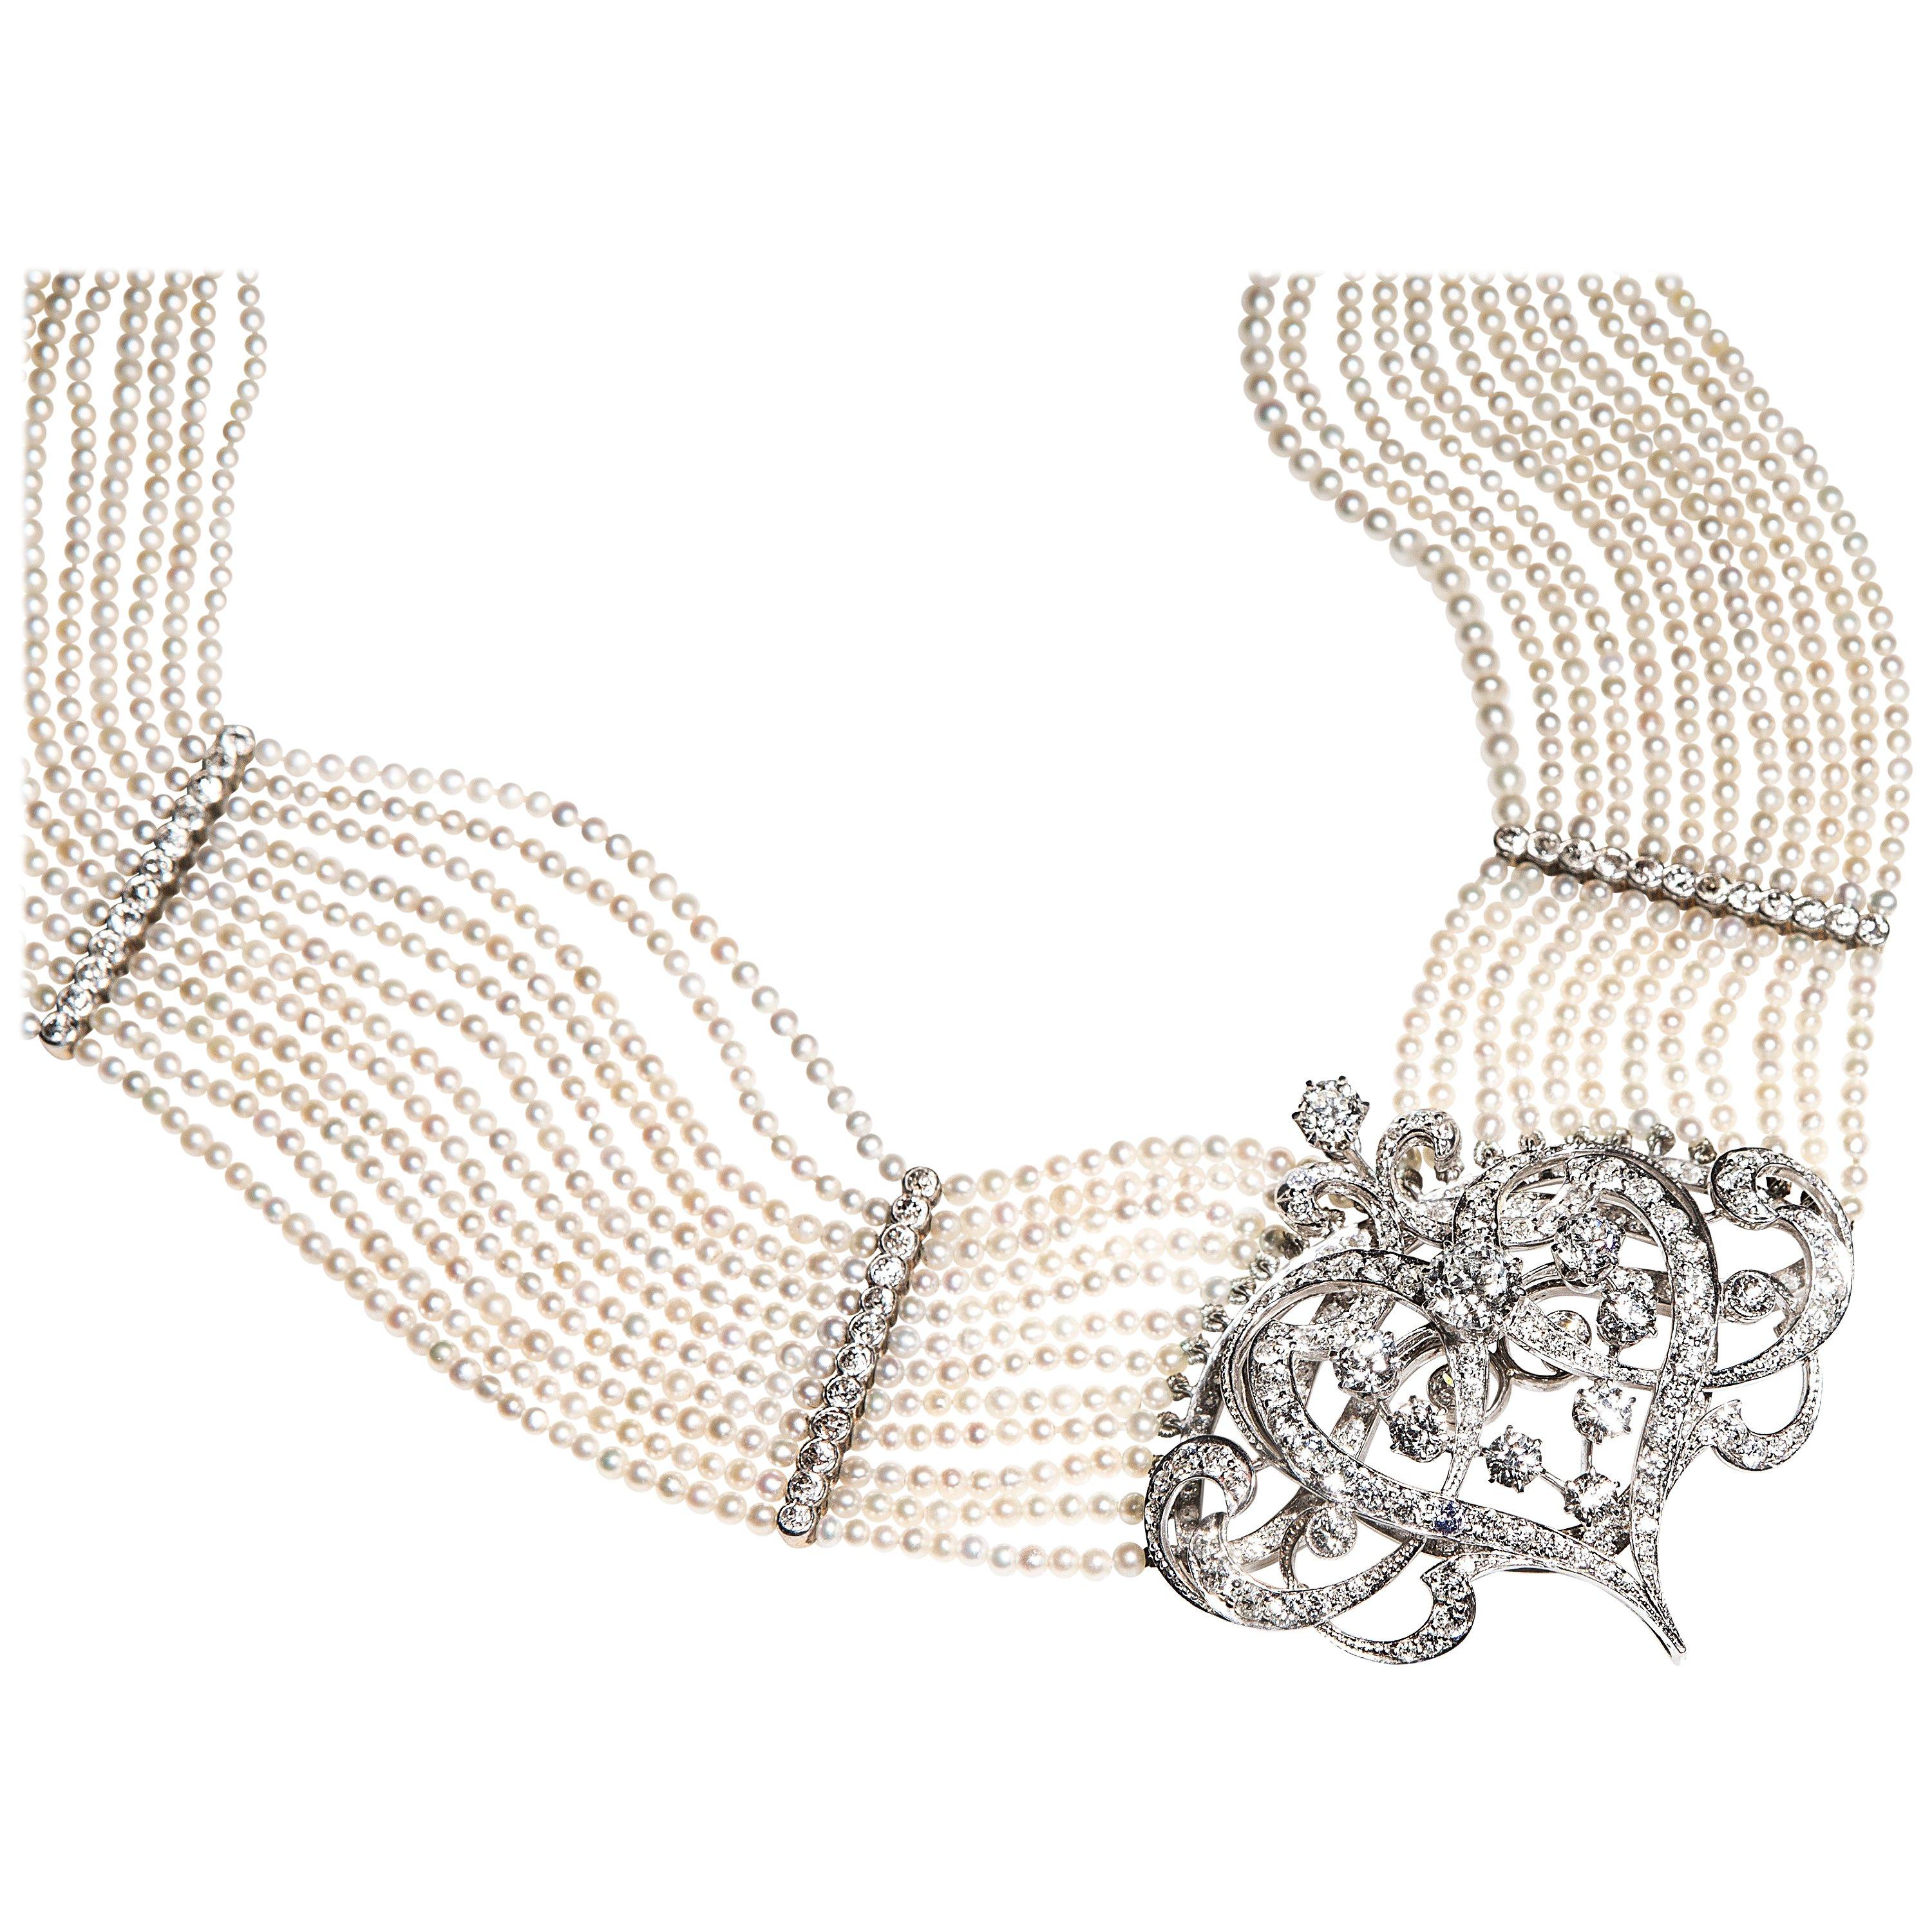 Atemberaubende Halskette aus 12 Stränge Saatgut Perlen (ca. 2,5 mm bis 3 mm) gut aufeinander abgestimmt, der Creme Körper Farbe mit schwachen rosa Obertöne. Sie sind von guter Qualität und glänzen. Die Stränge sind durch fein gearbeitete Trennwände